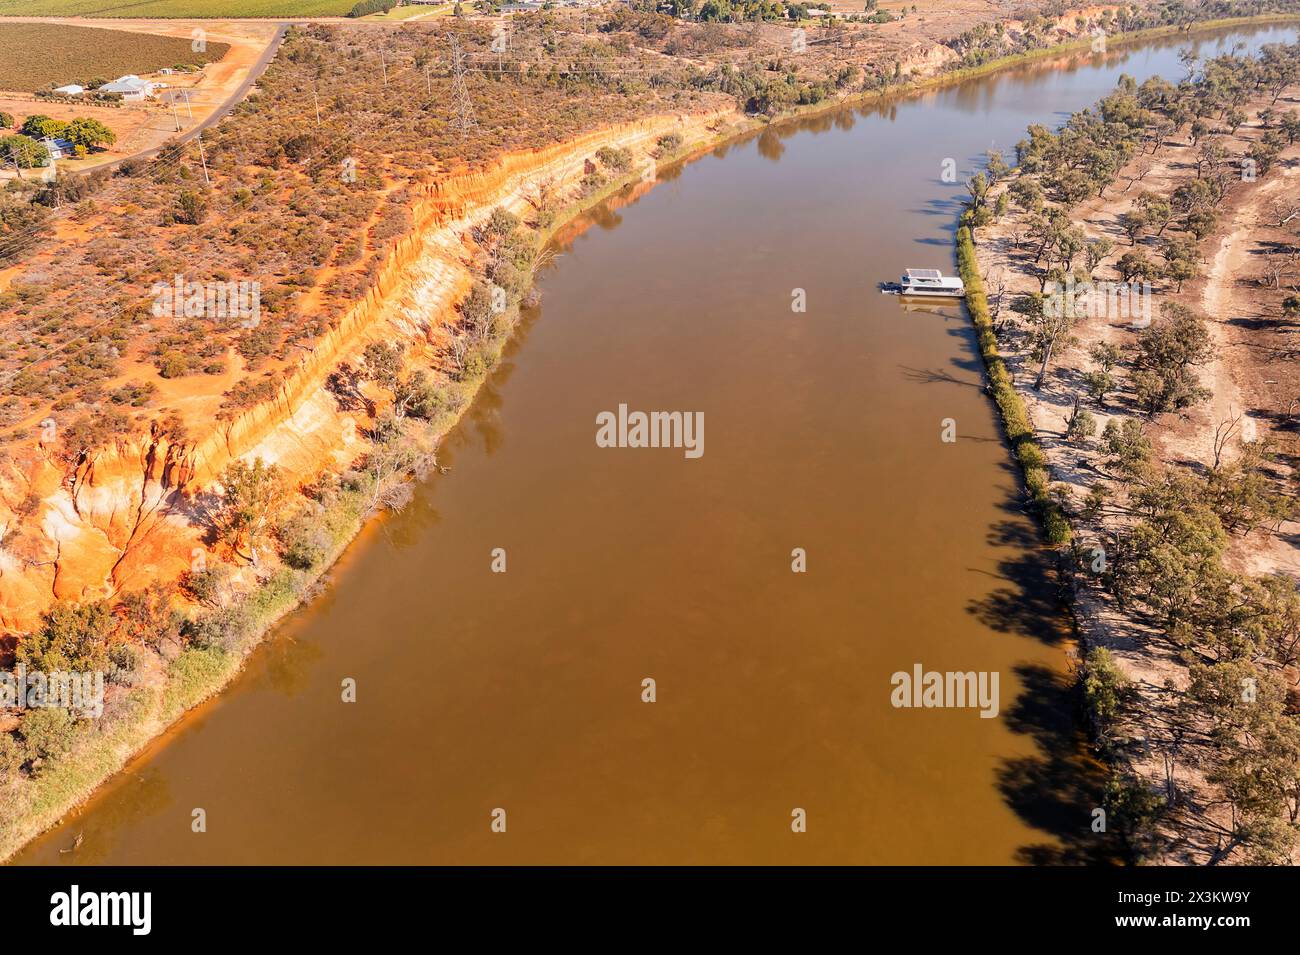 Vista aerea da sinistra a destra dall'alto verso il basso del torrente Murray presso Red Cliffs a Victoria e NSW, Austalia. Foto Stock